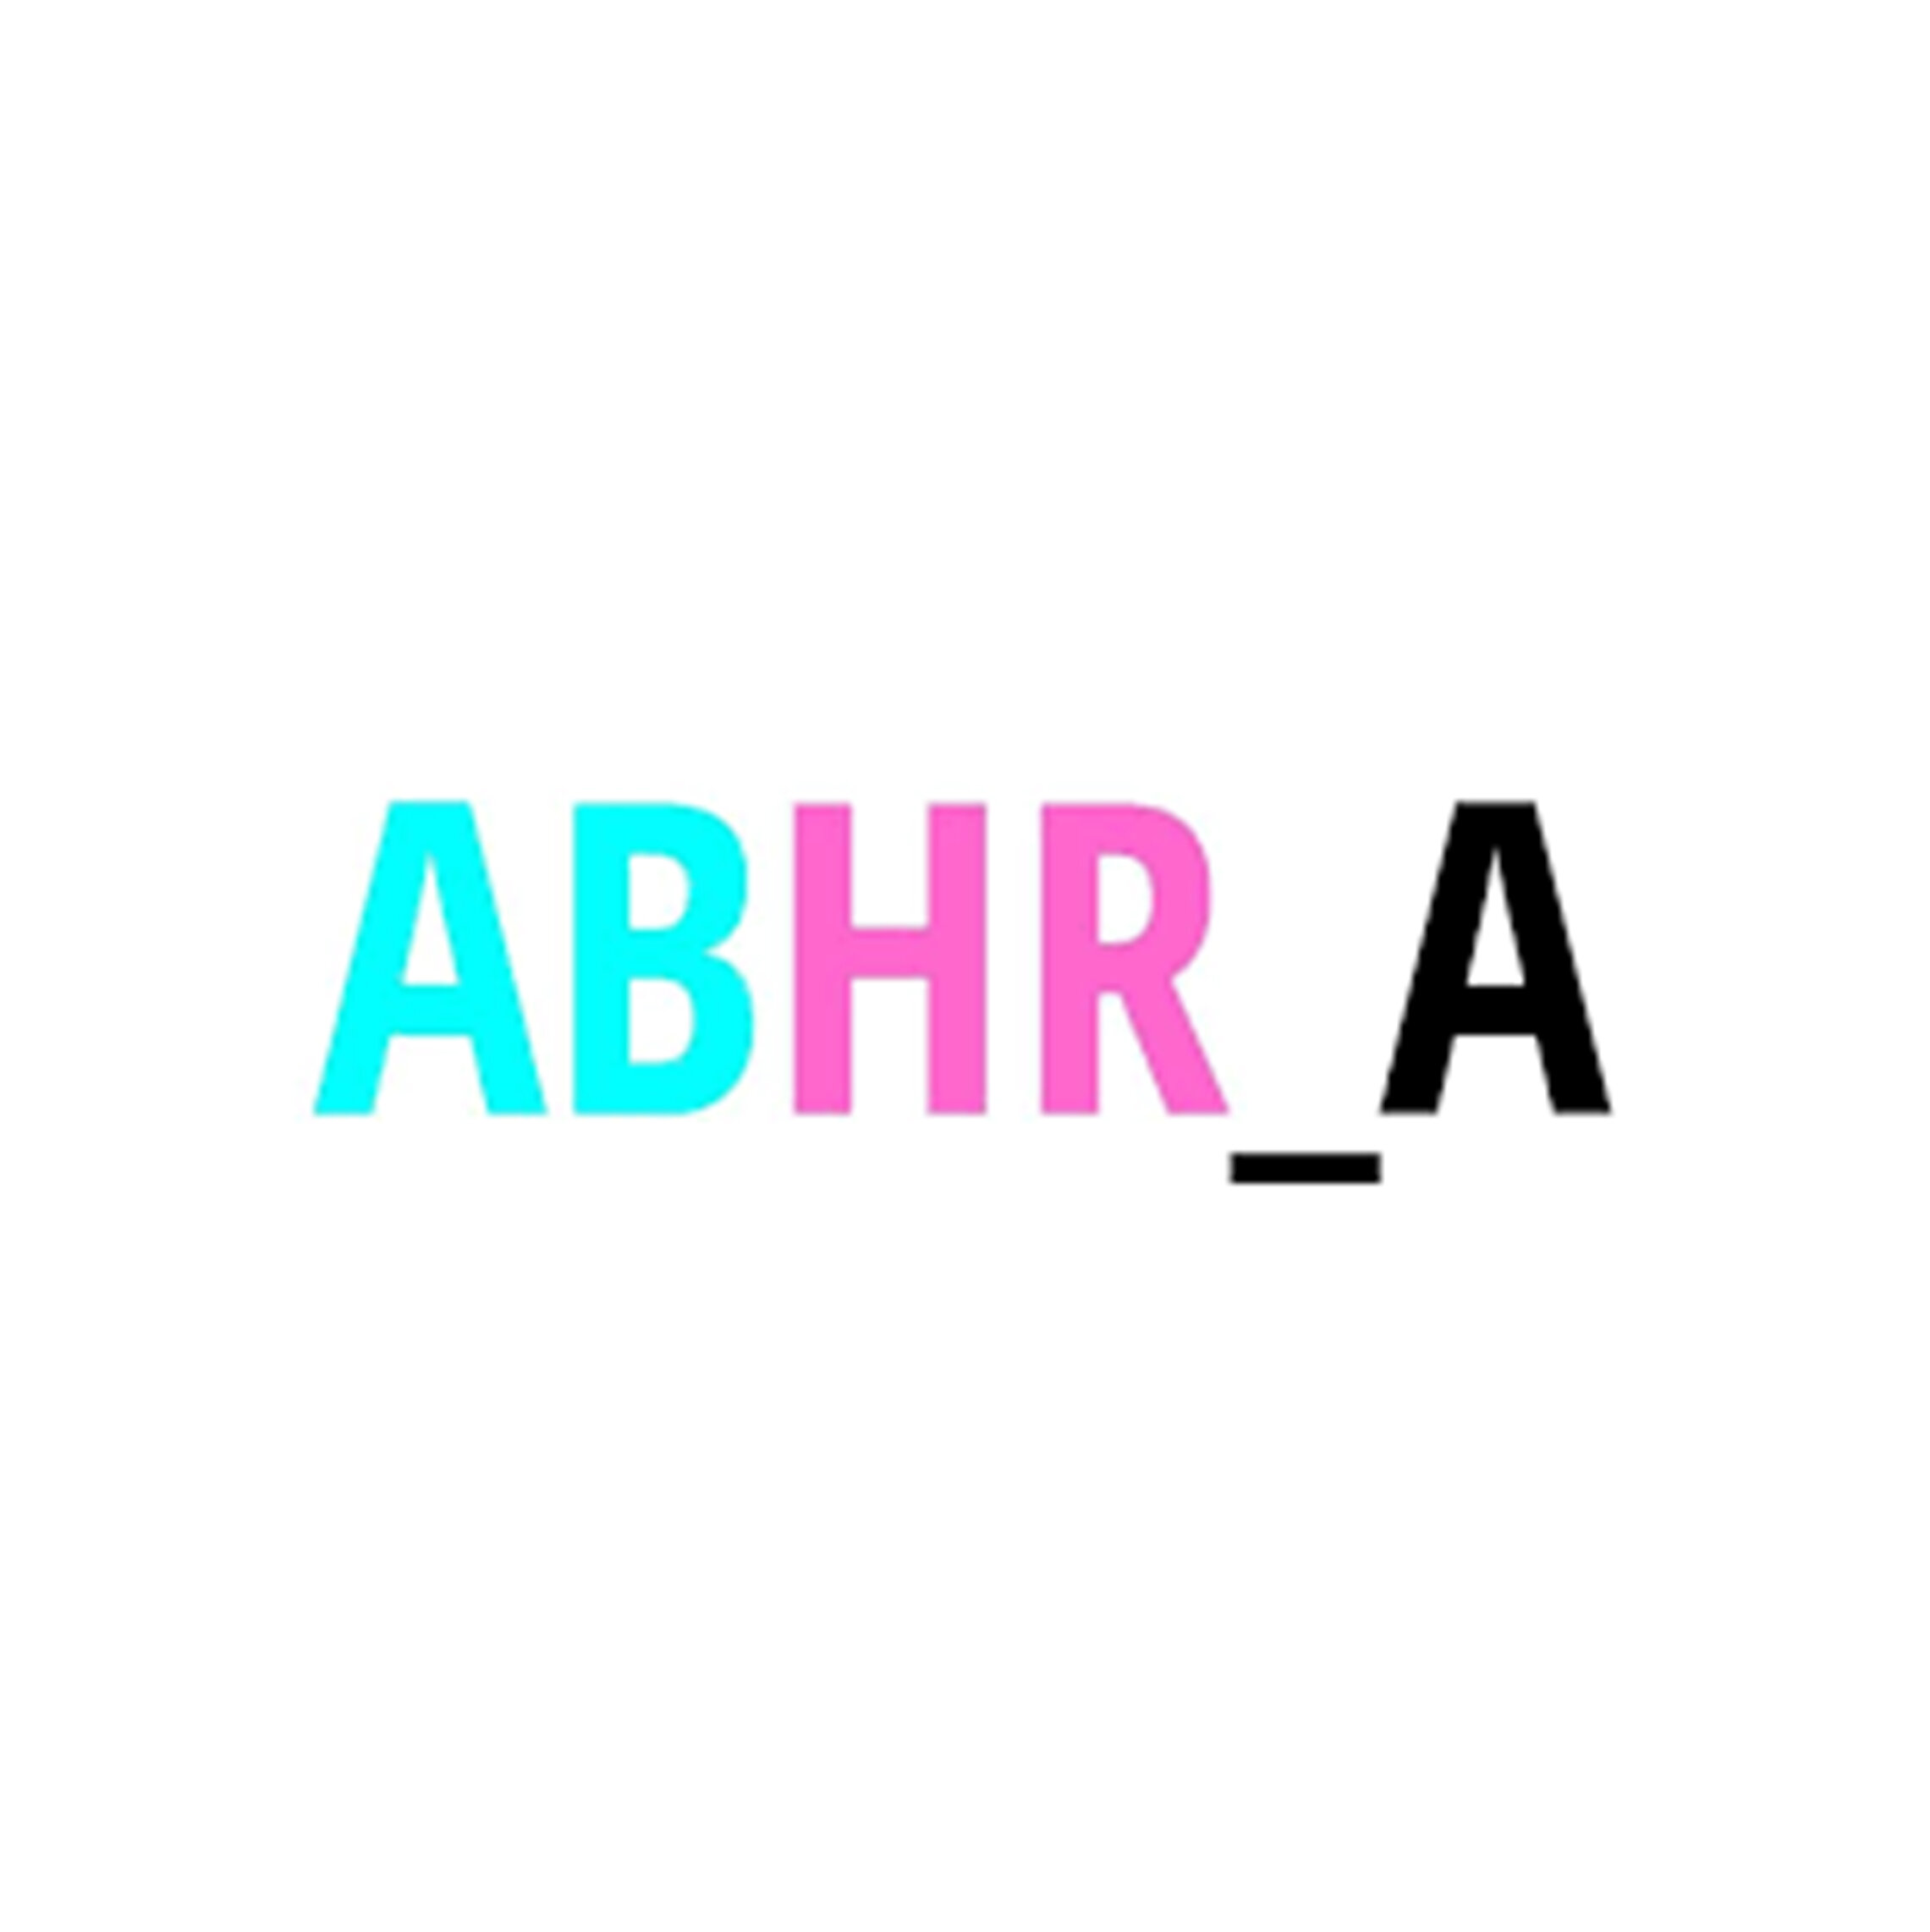 ABHR_A